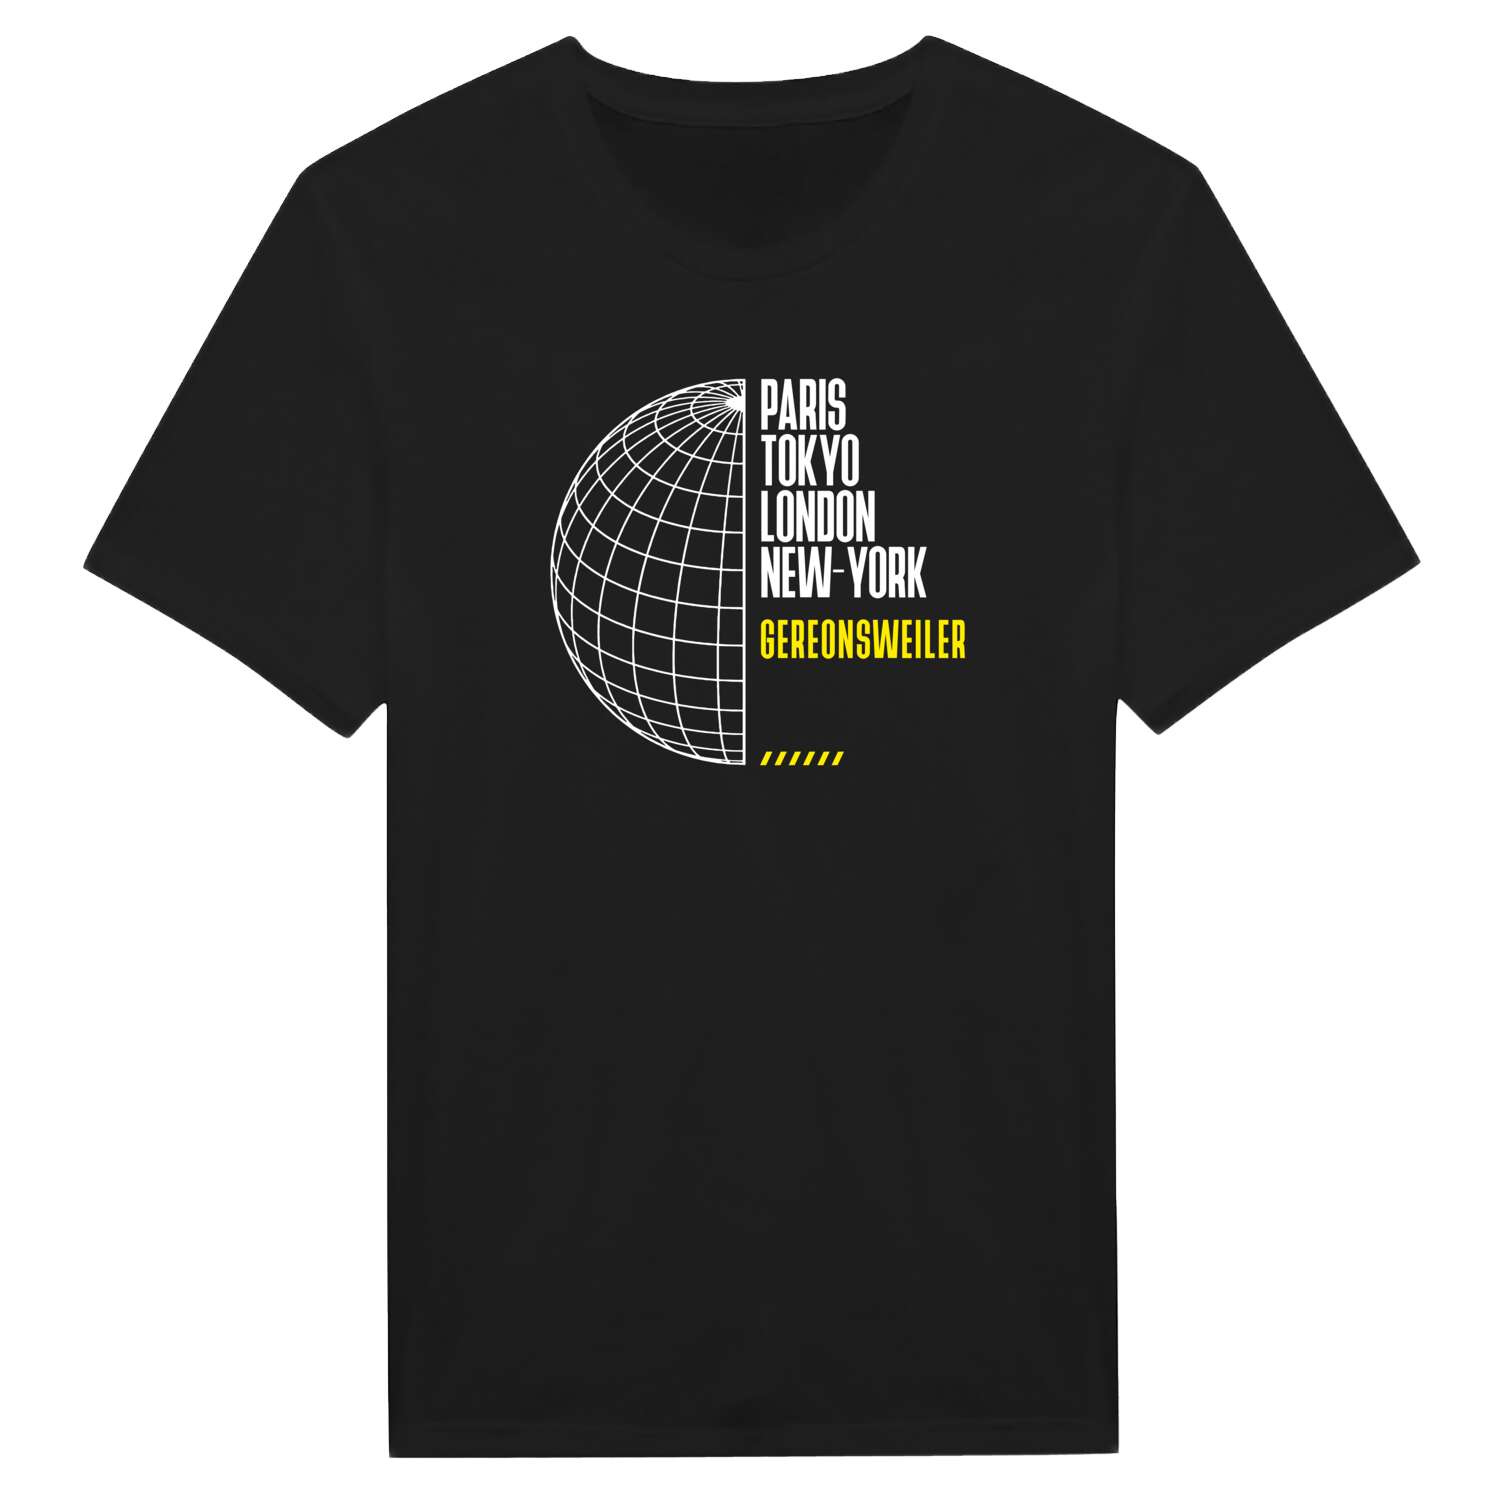 Gereonsweiler T-Shirt »Paris Tokyo London«